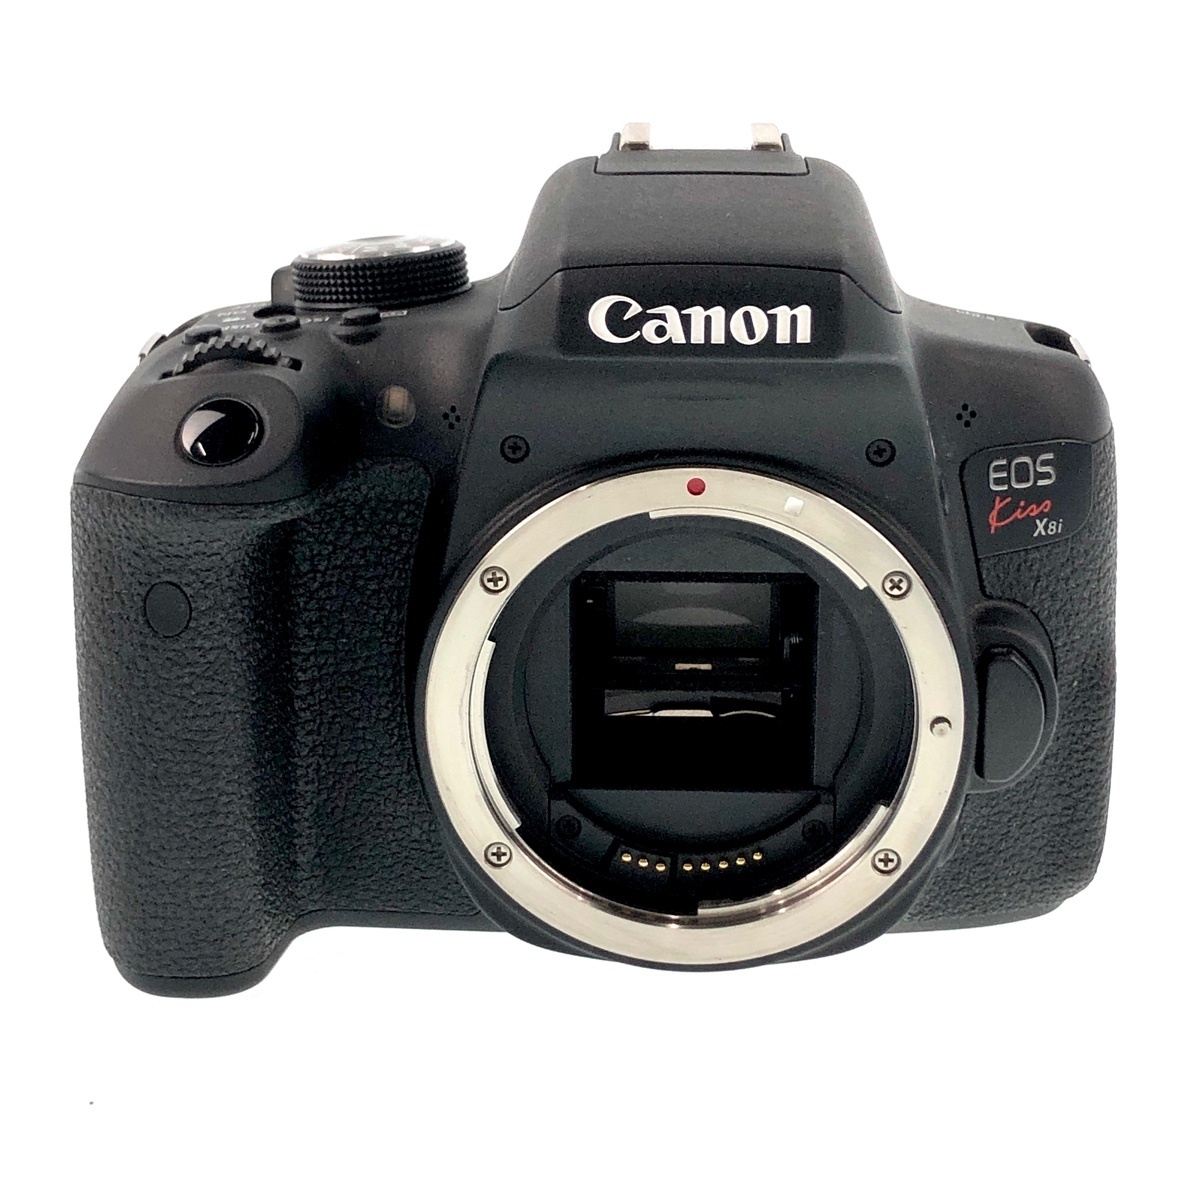 キヤノン Canon EOS Kiss X8i ボディ デジタル 一眼レフカメラ